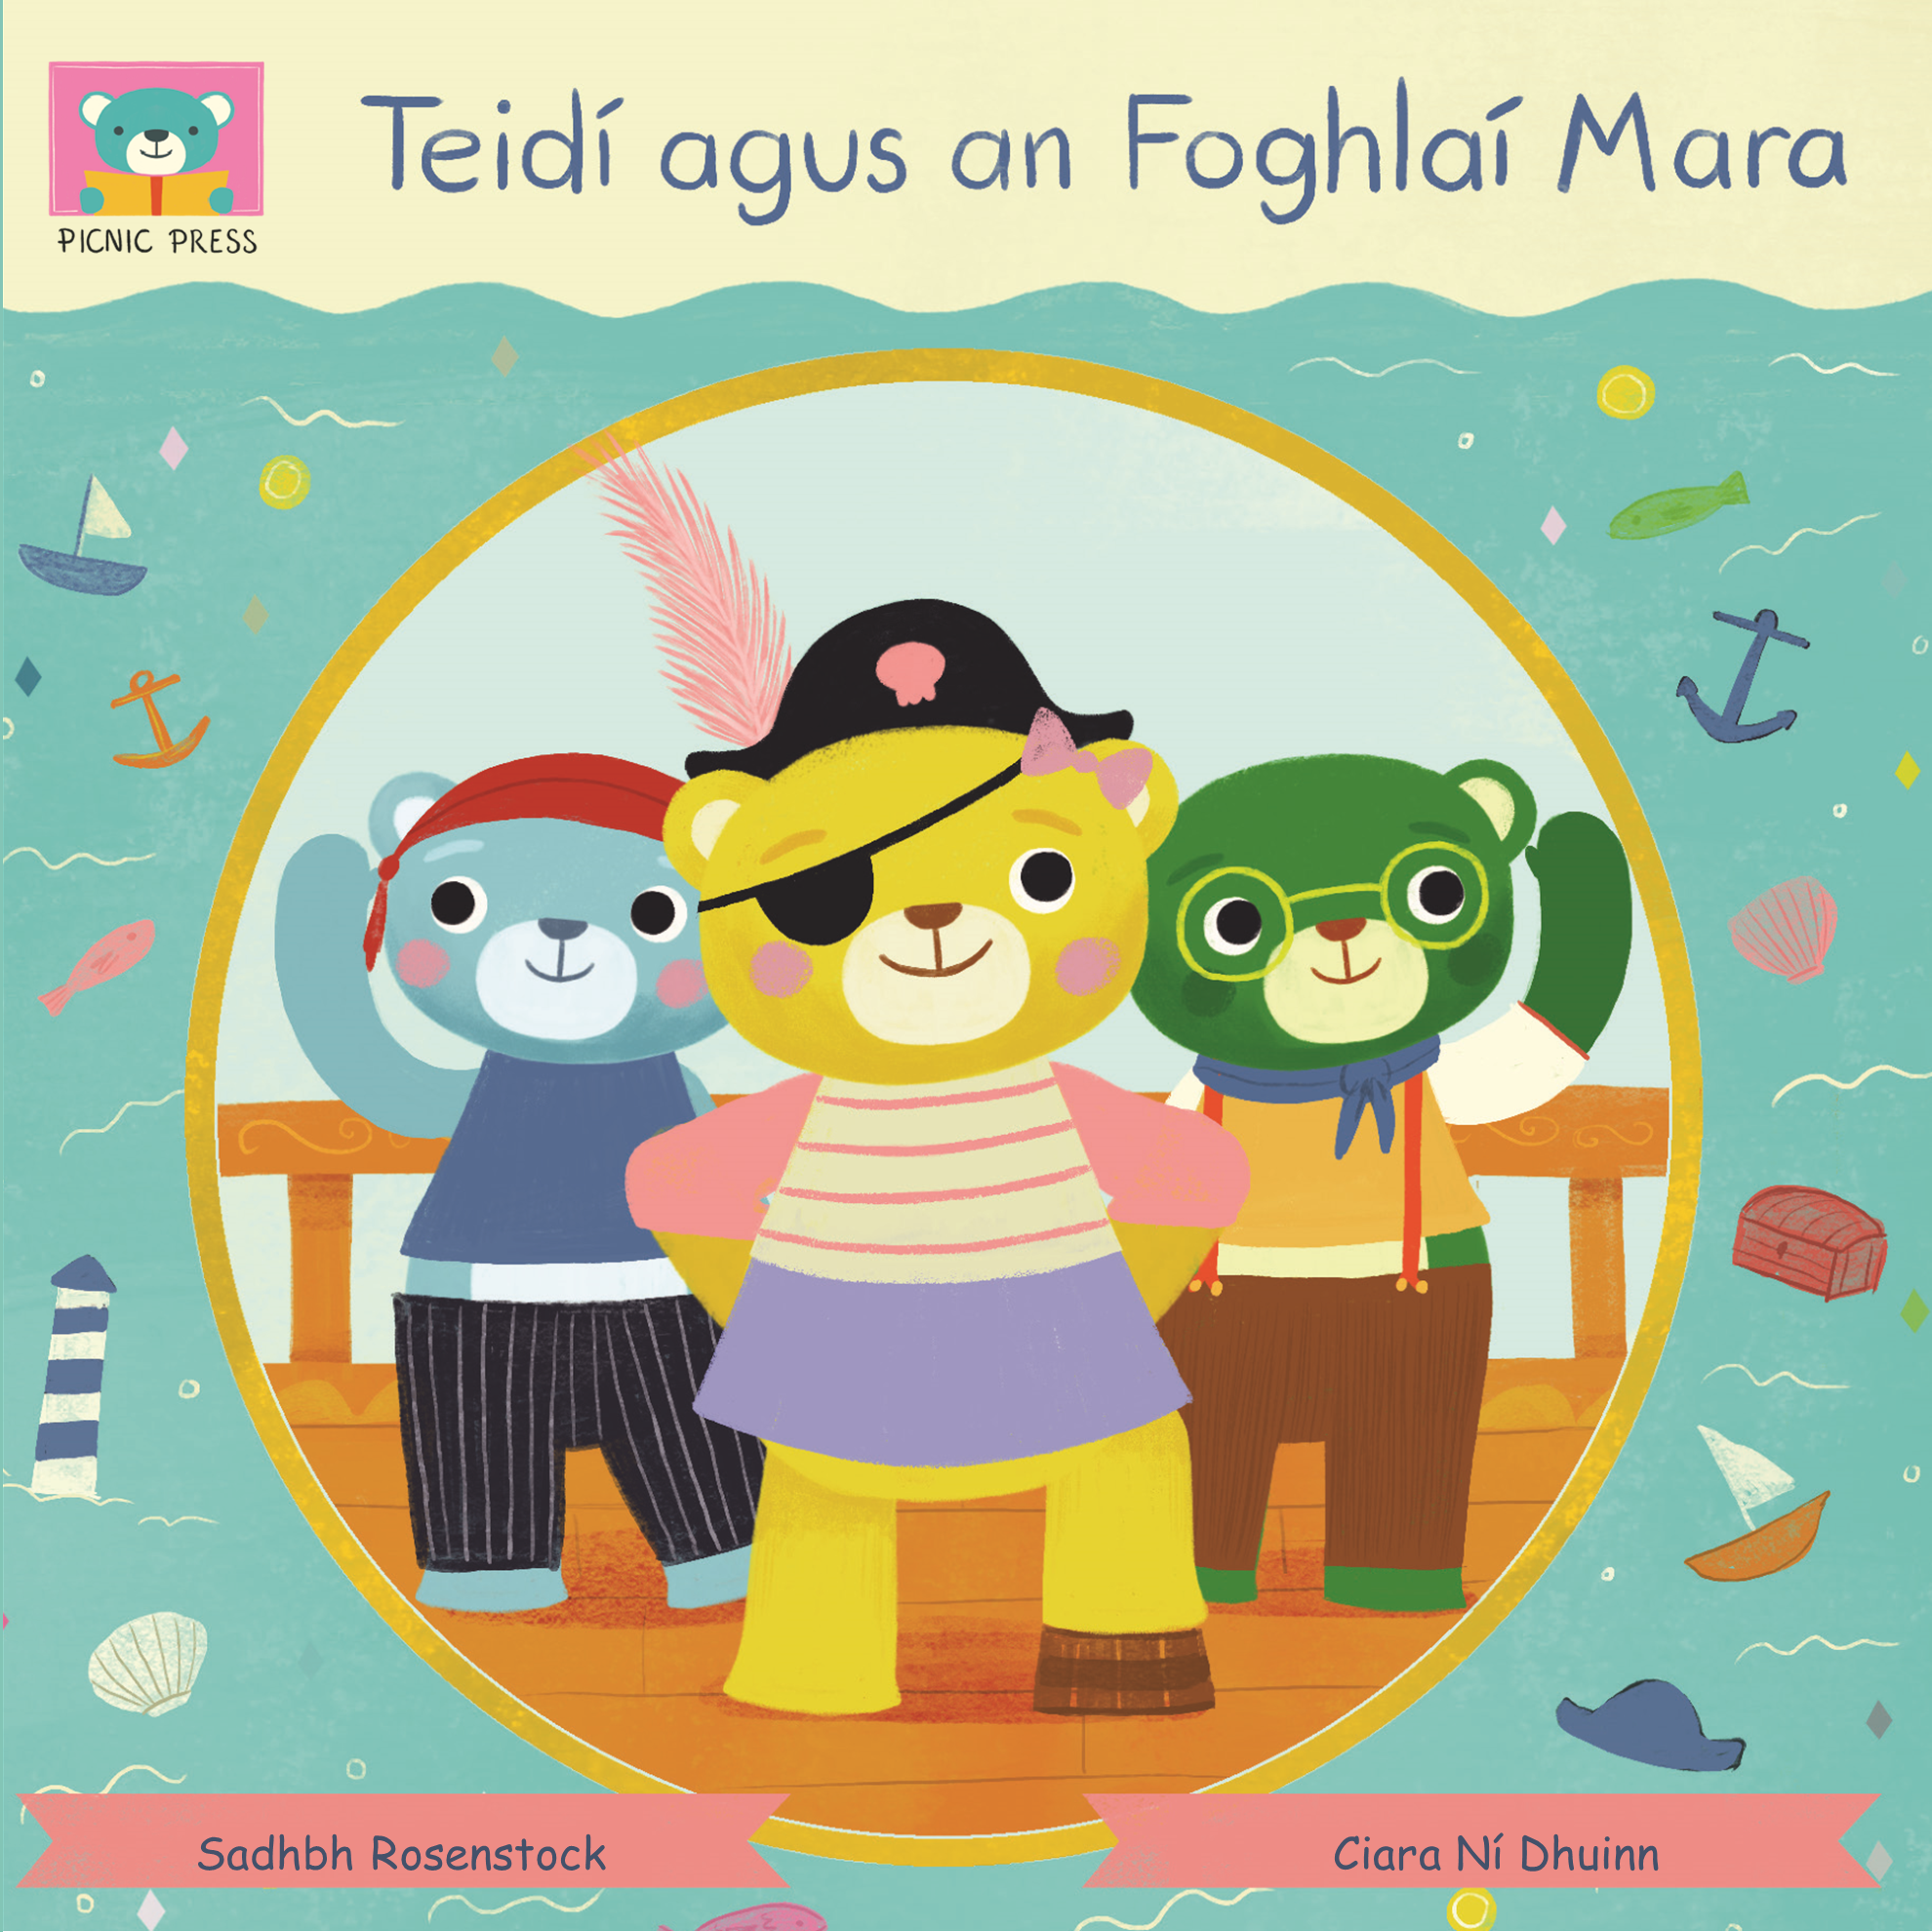 Teidí agus an Foghlaí Mara leabhar/book